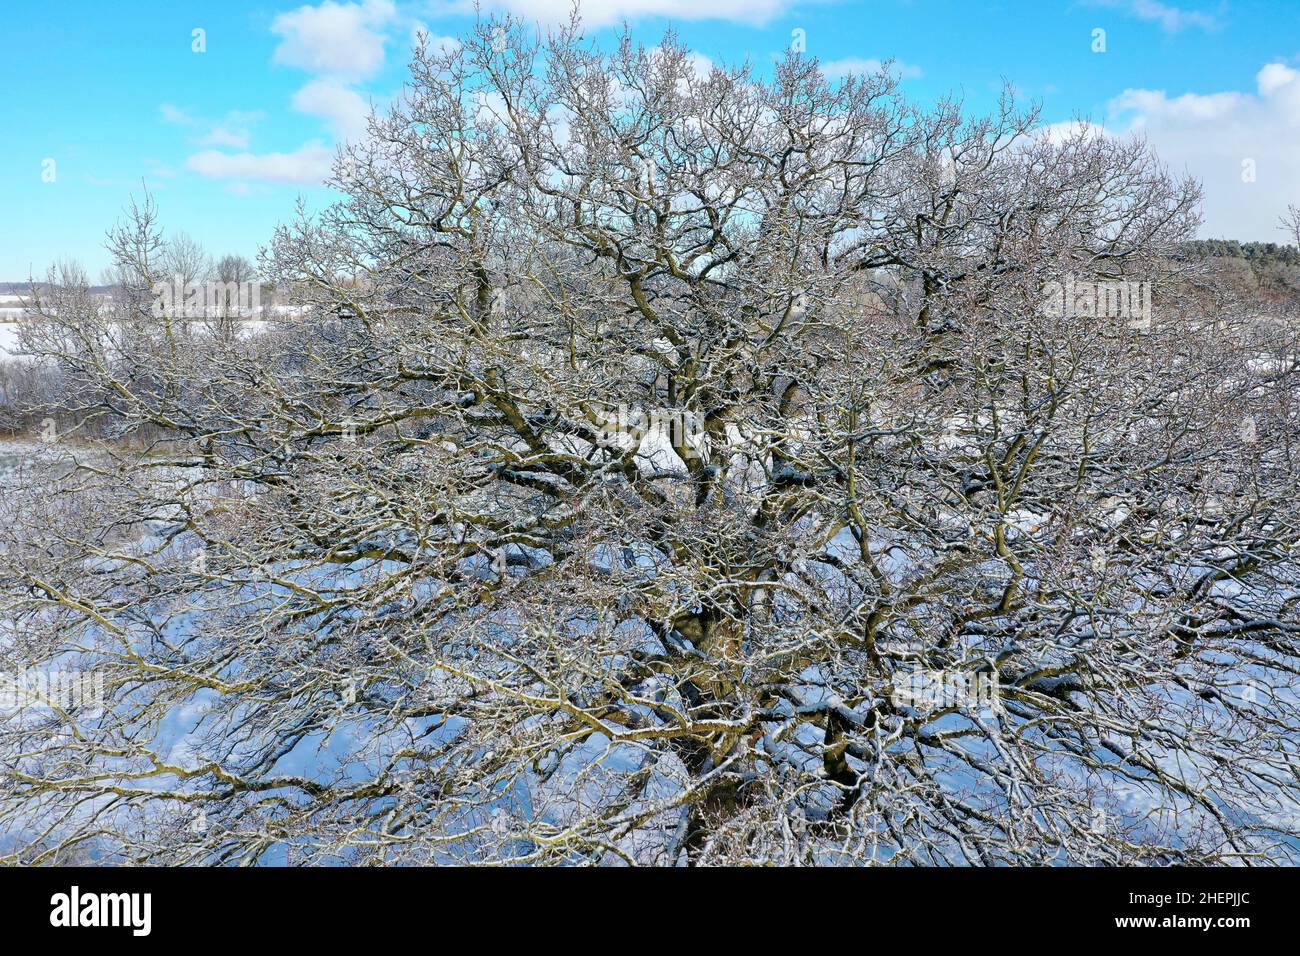 roble (Quercus spec.), foto de drone desde arriba de un roble sin hojas, Alemania, Schleswig-Holstein Foto de stock